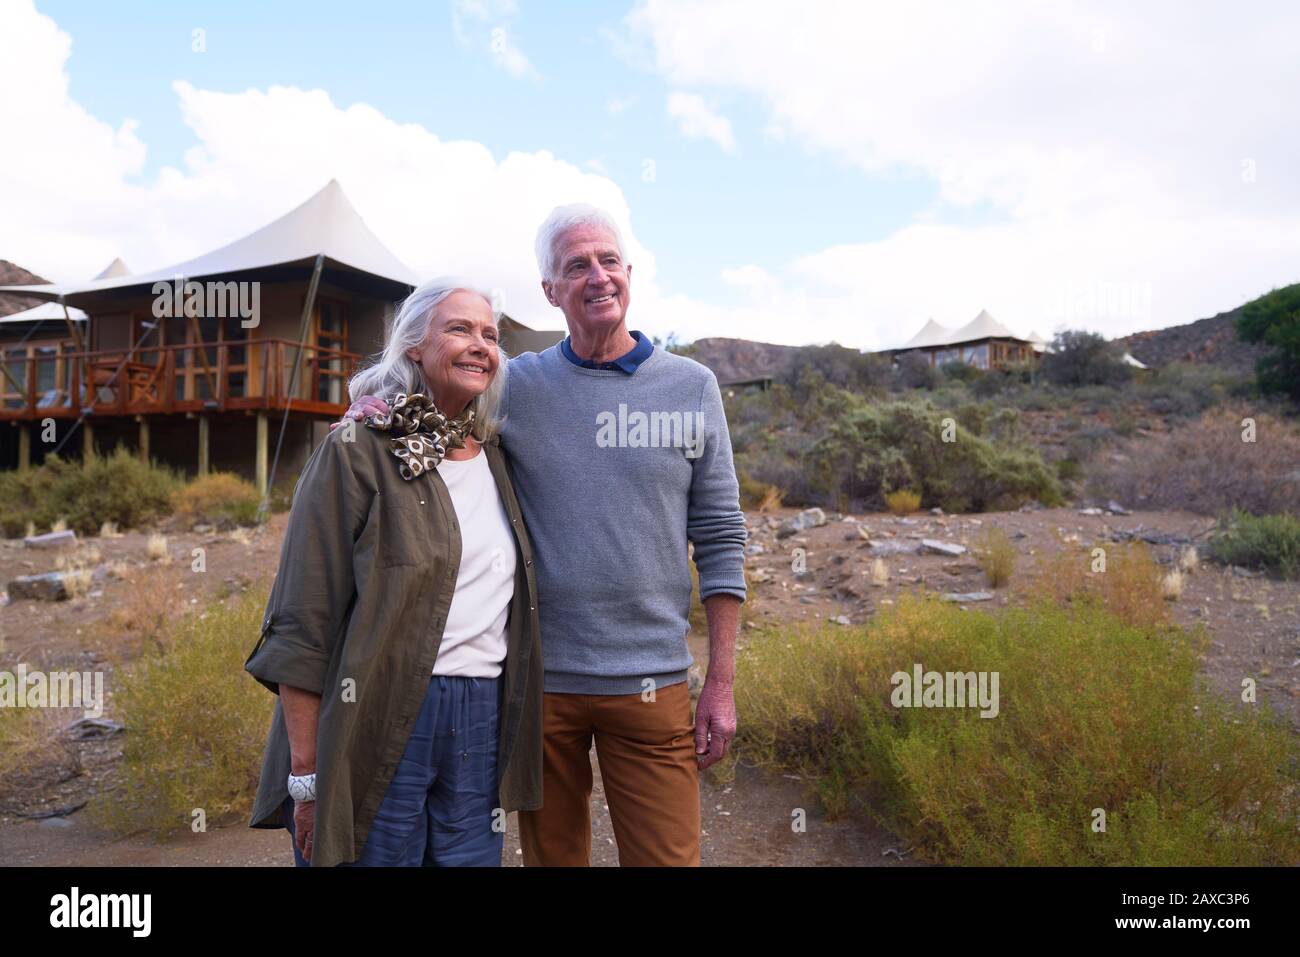 Un couple senior heureux à l'extérieur de la cabine de safari Lodge Banque D'Images